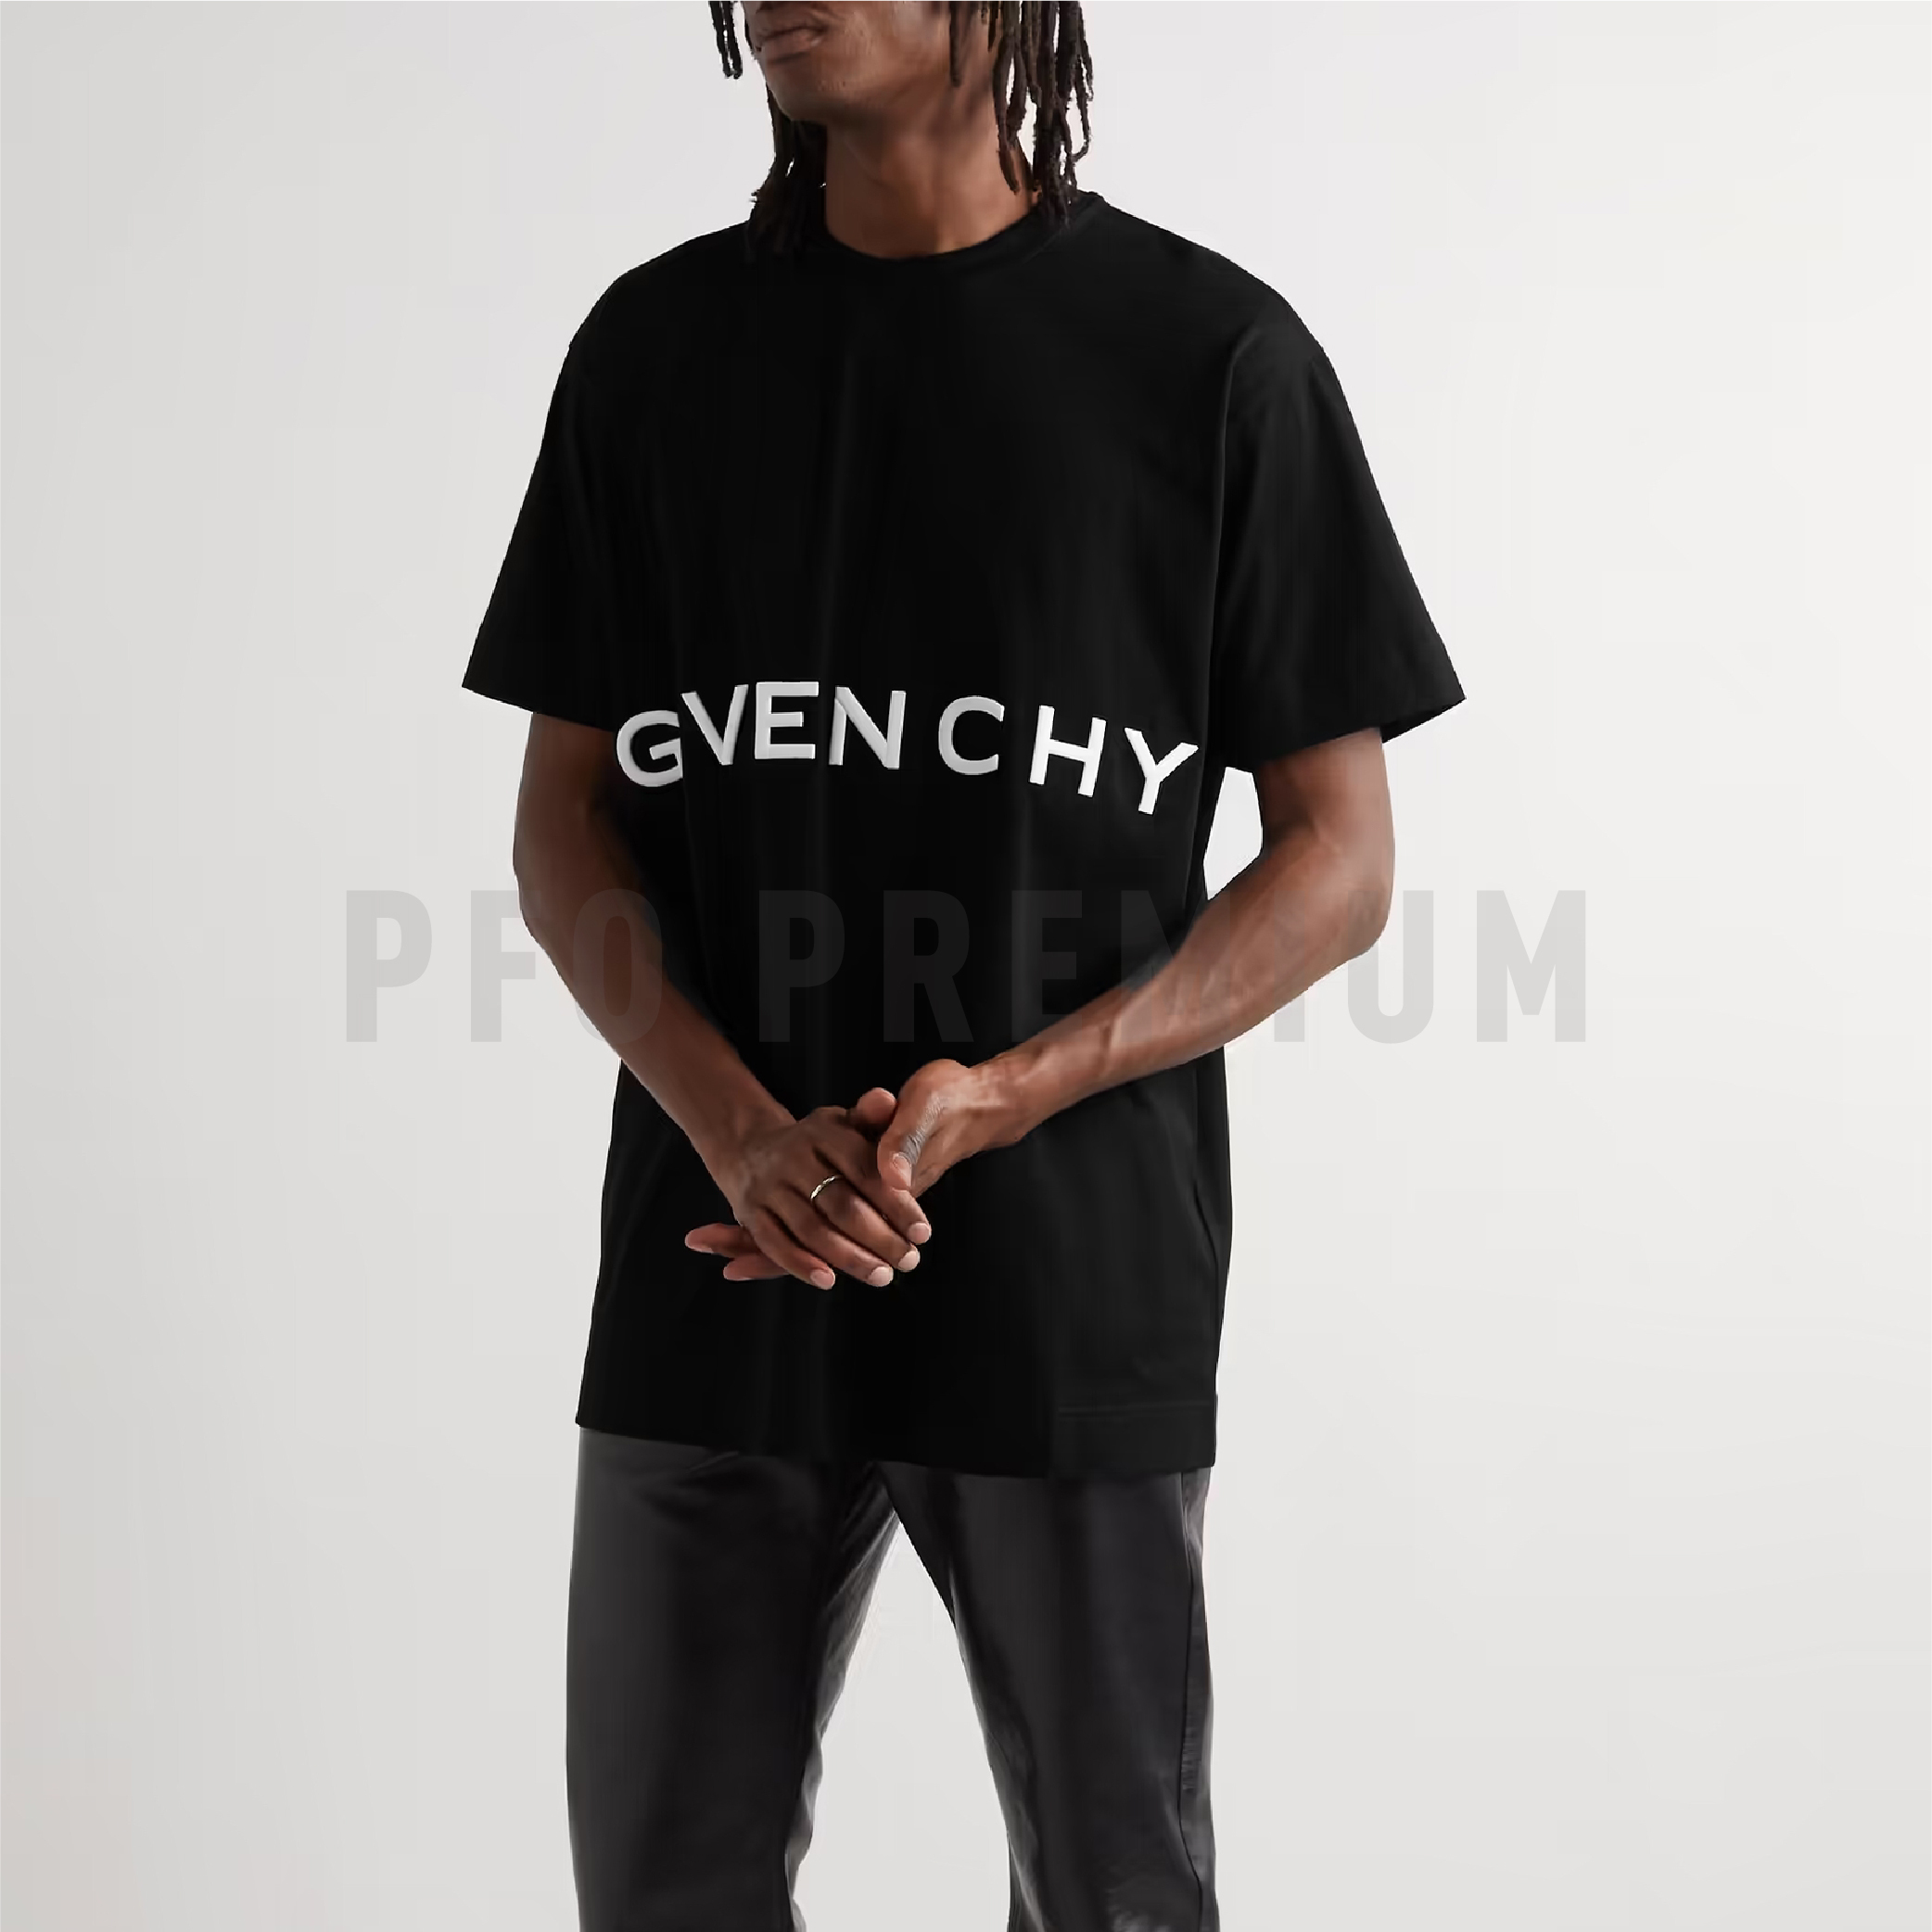 Givenchy – PFO - Premium Fashion Origin